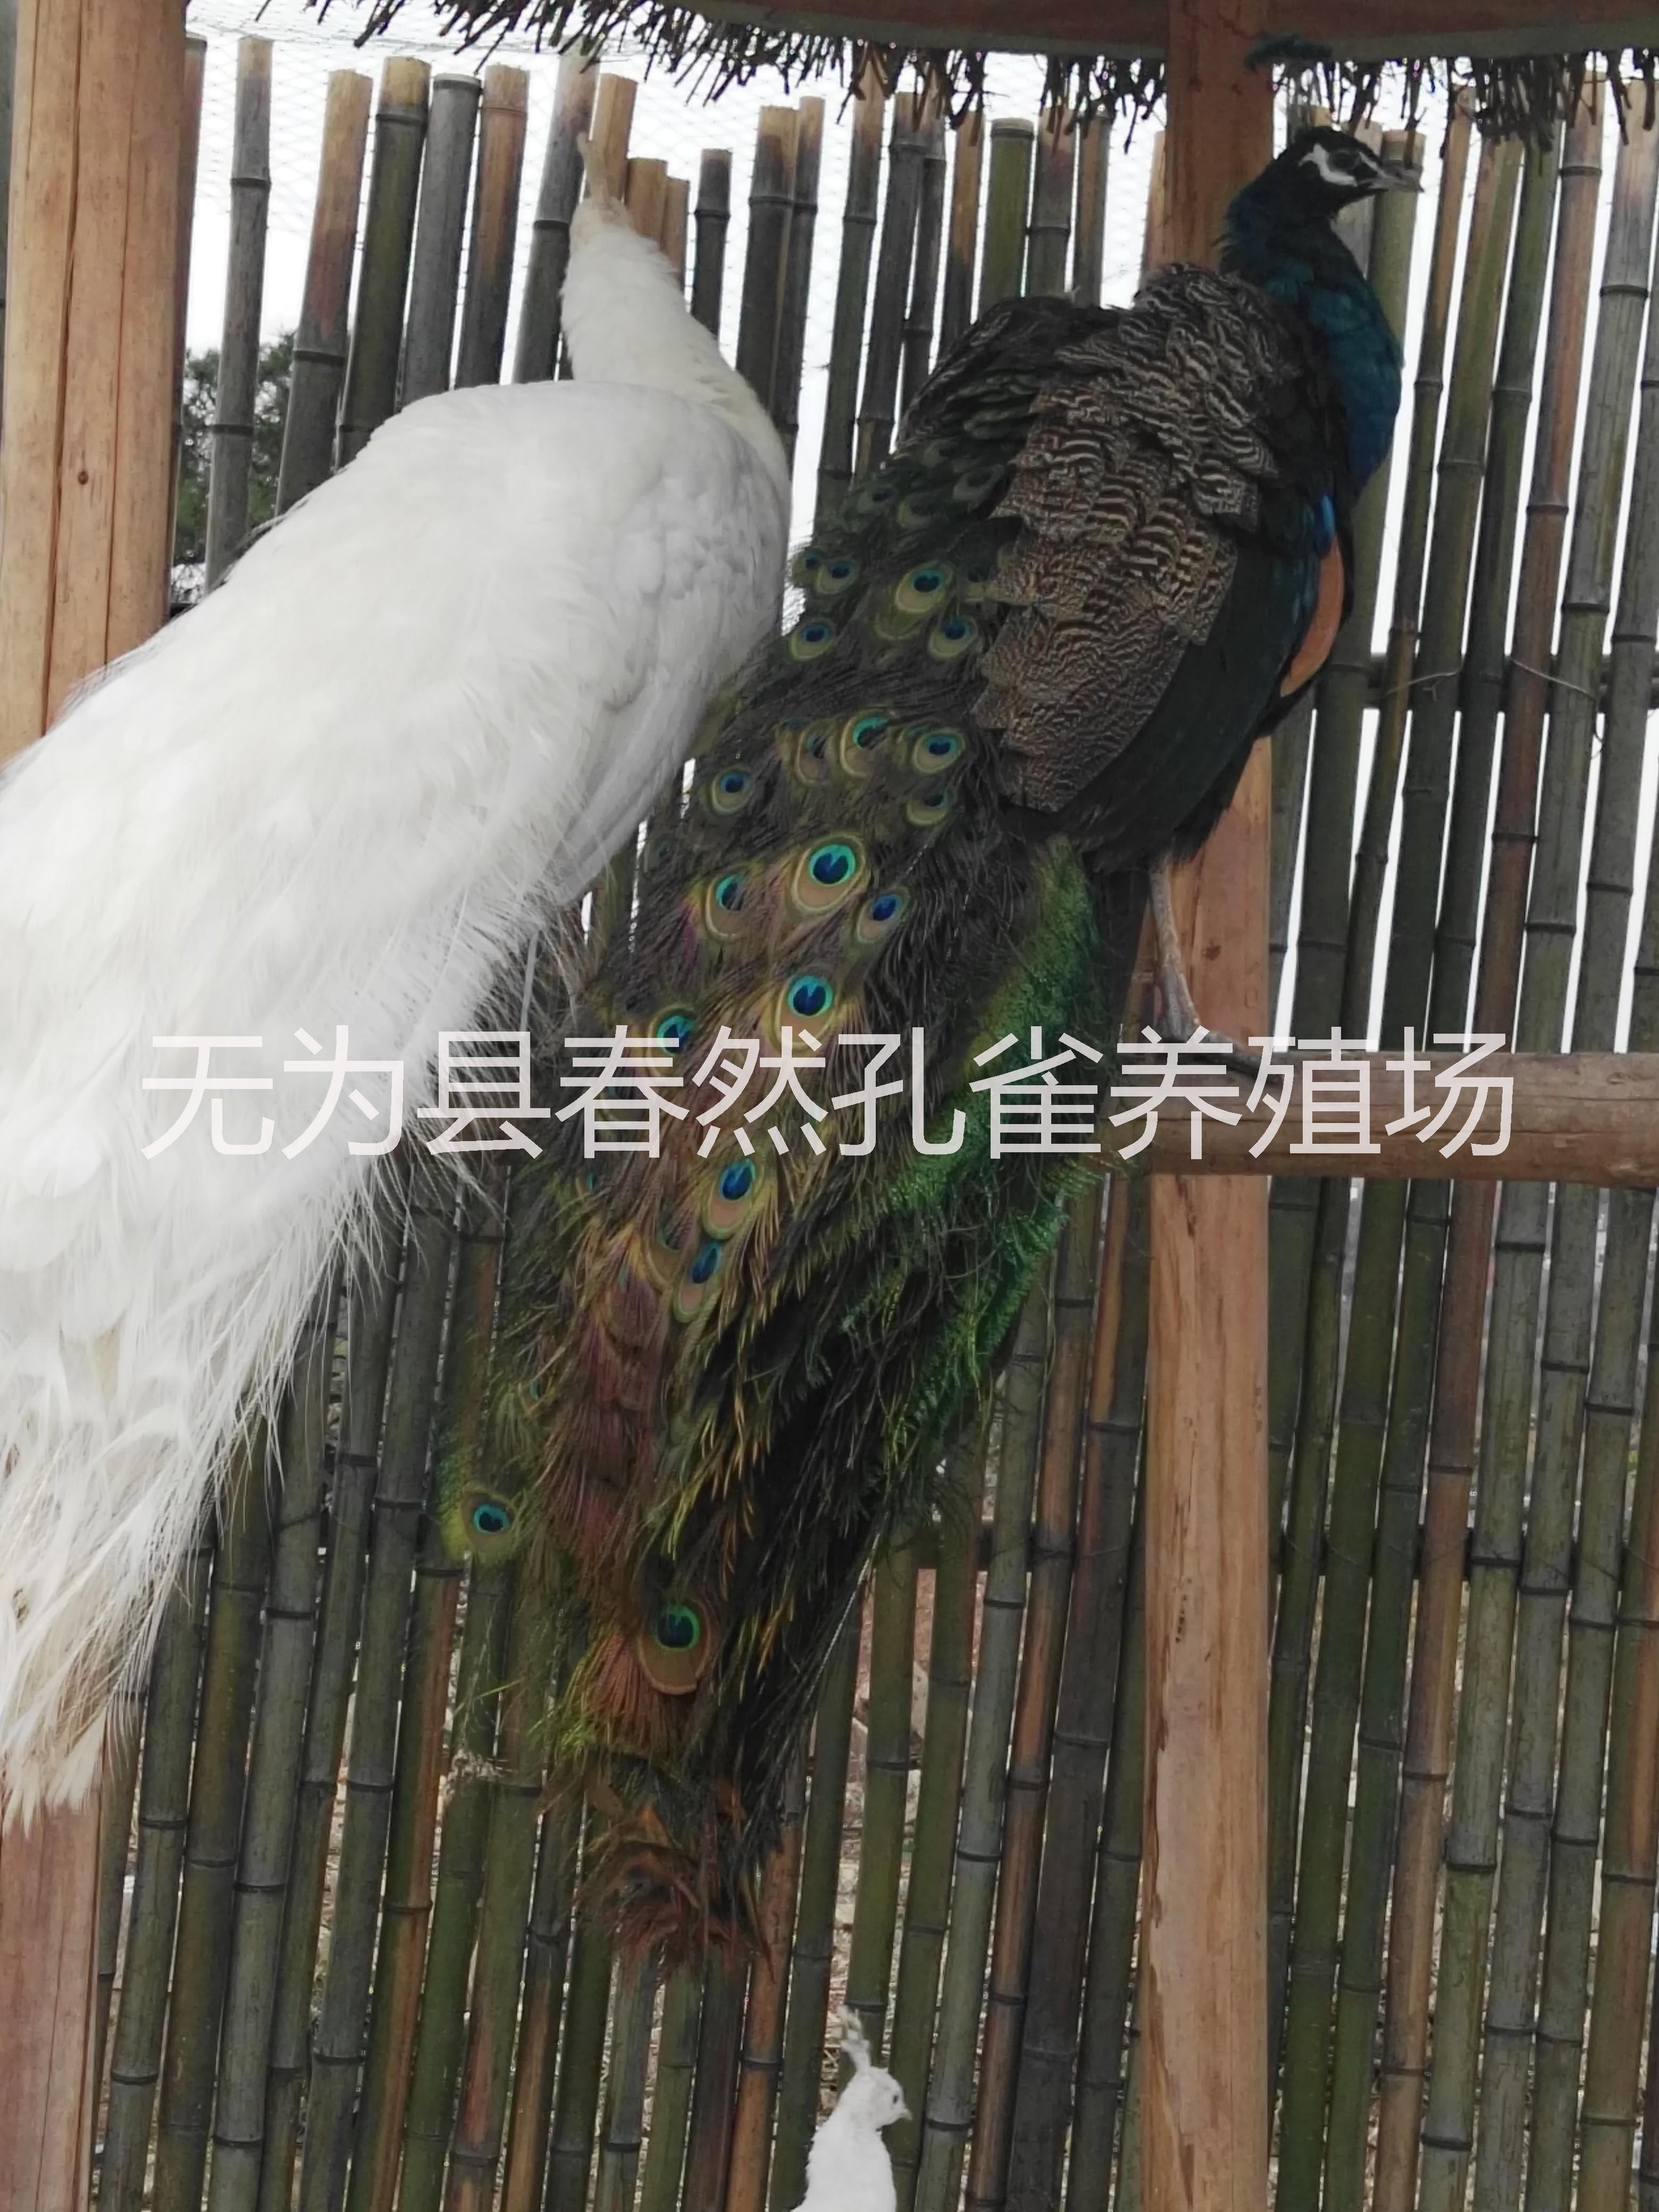 中国孔雀标本供应商安徽省浩然孔雀养殖有限公司大量供应